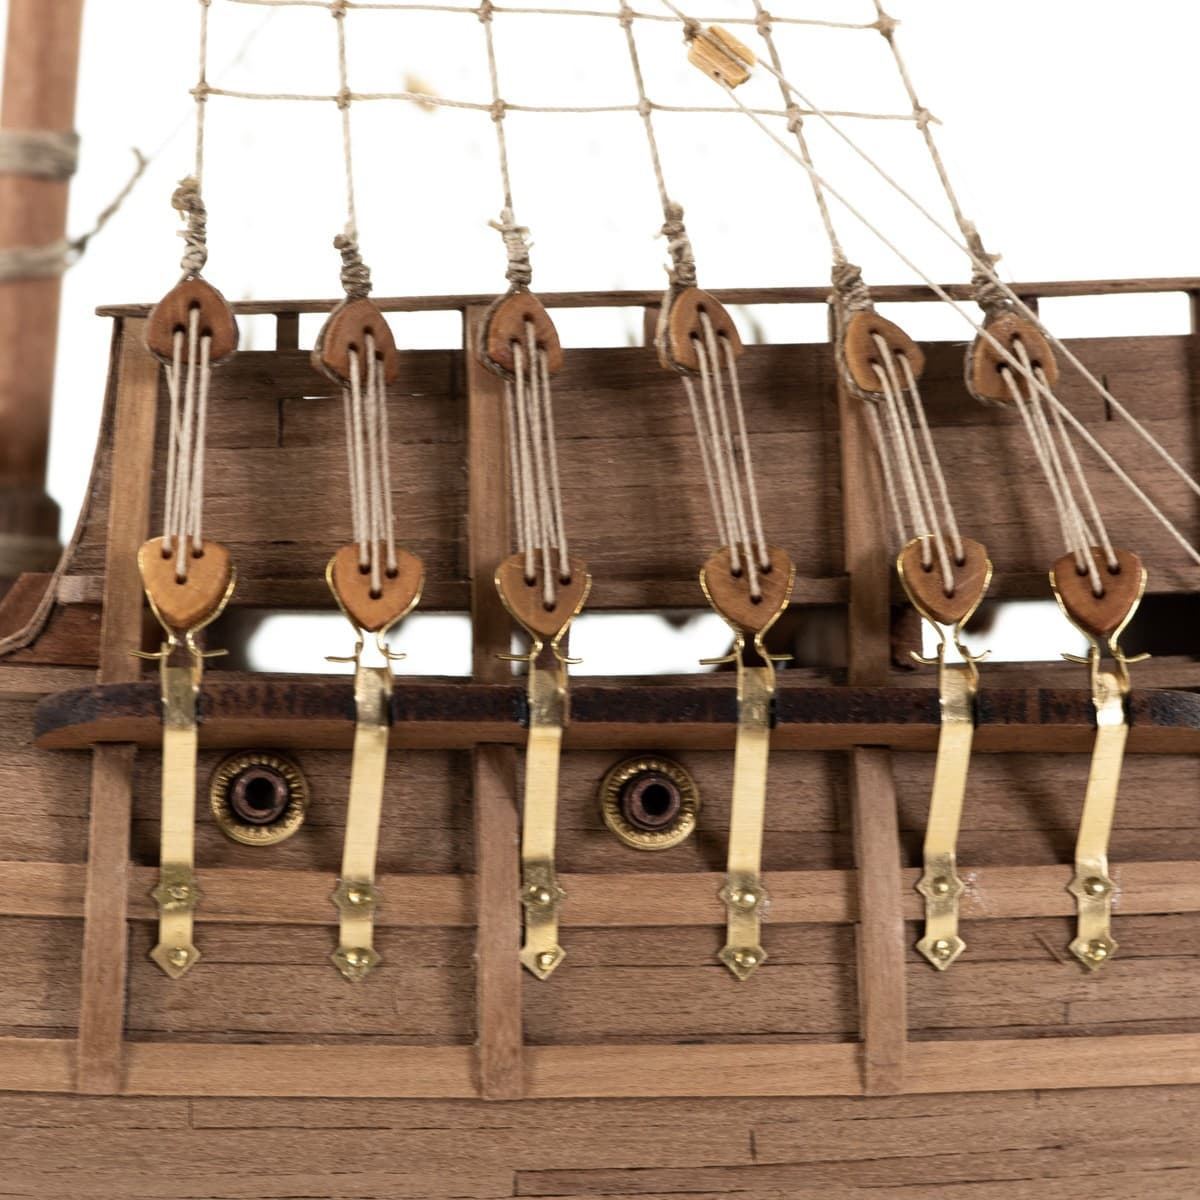 Maqueta barco madera: Carabela Santa María - Imagen 6